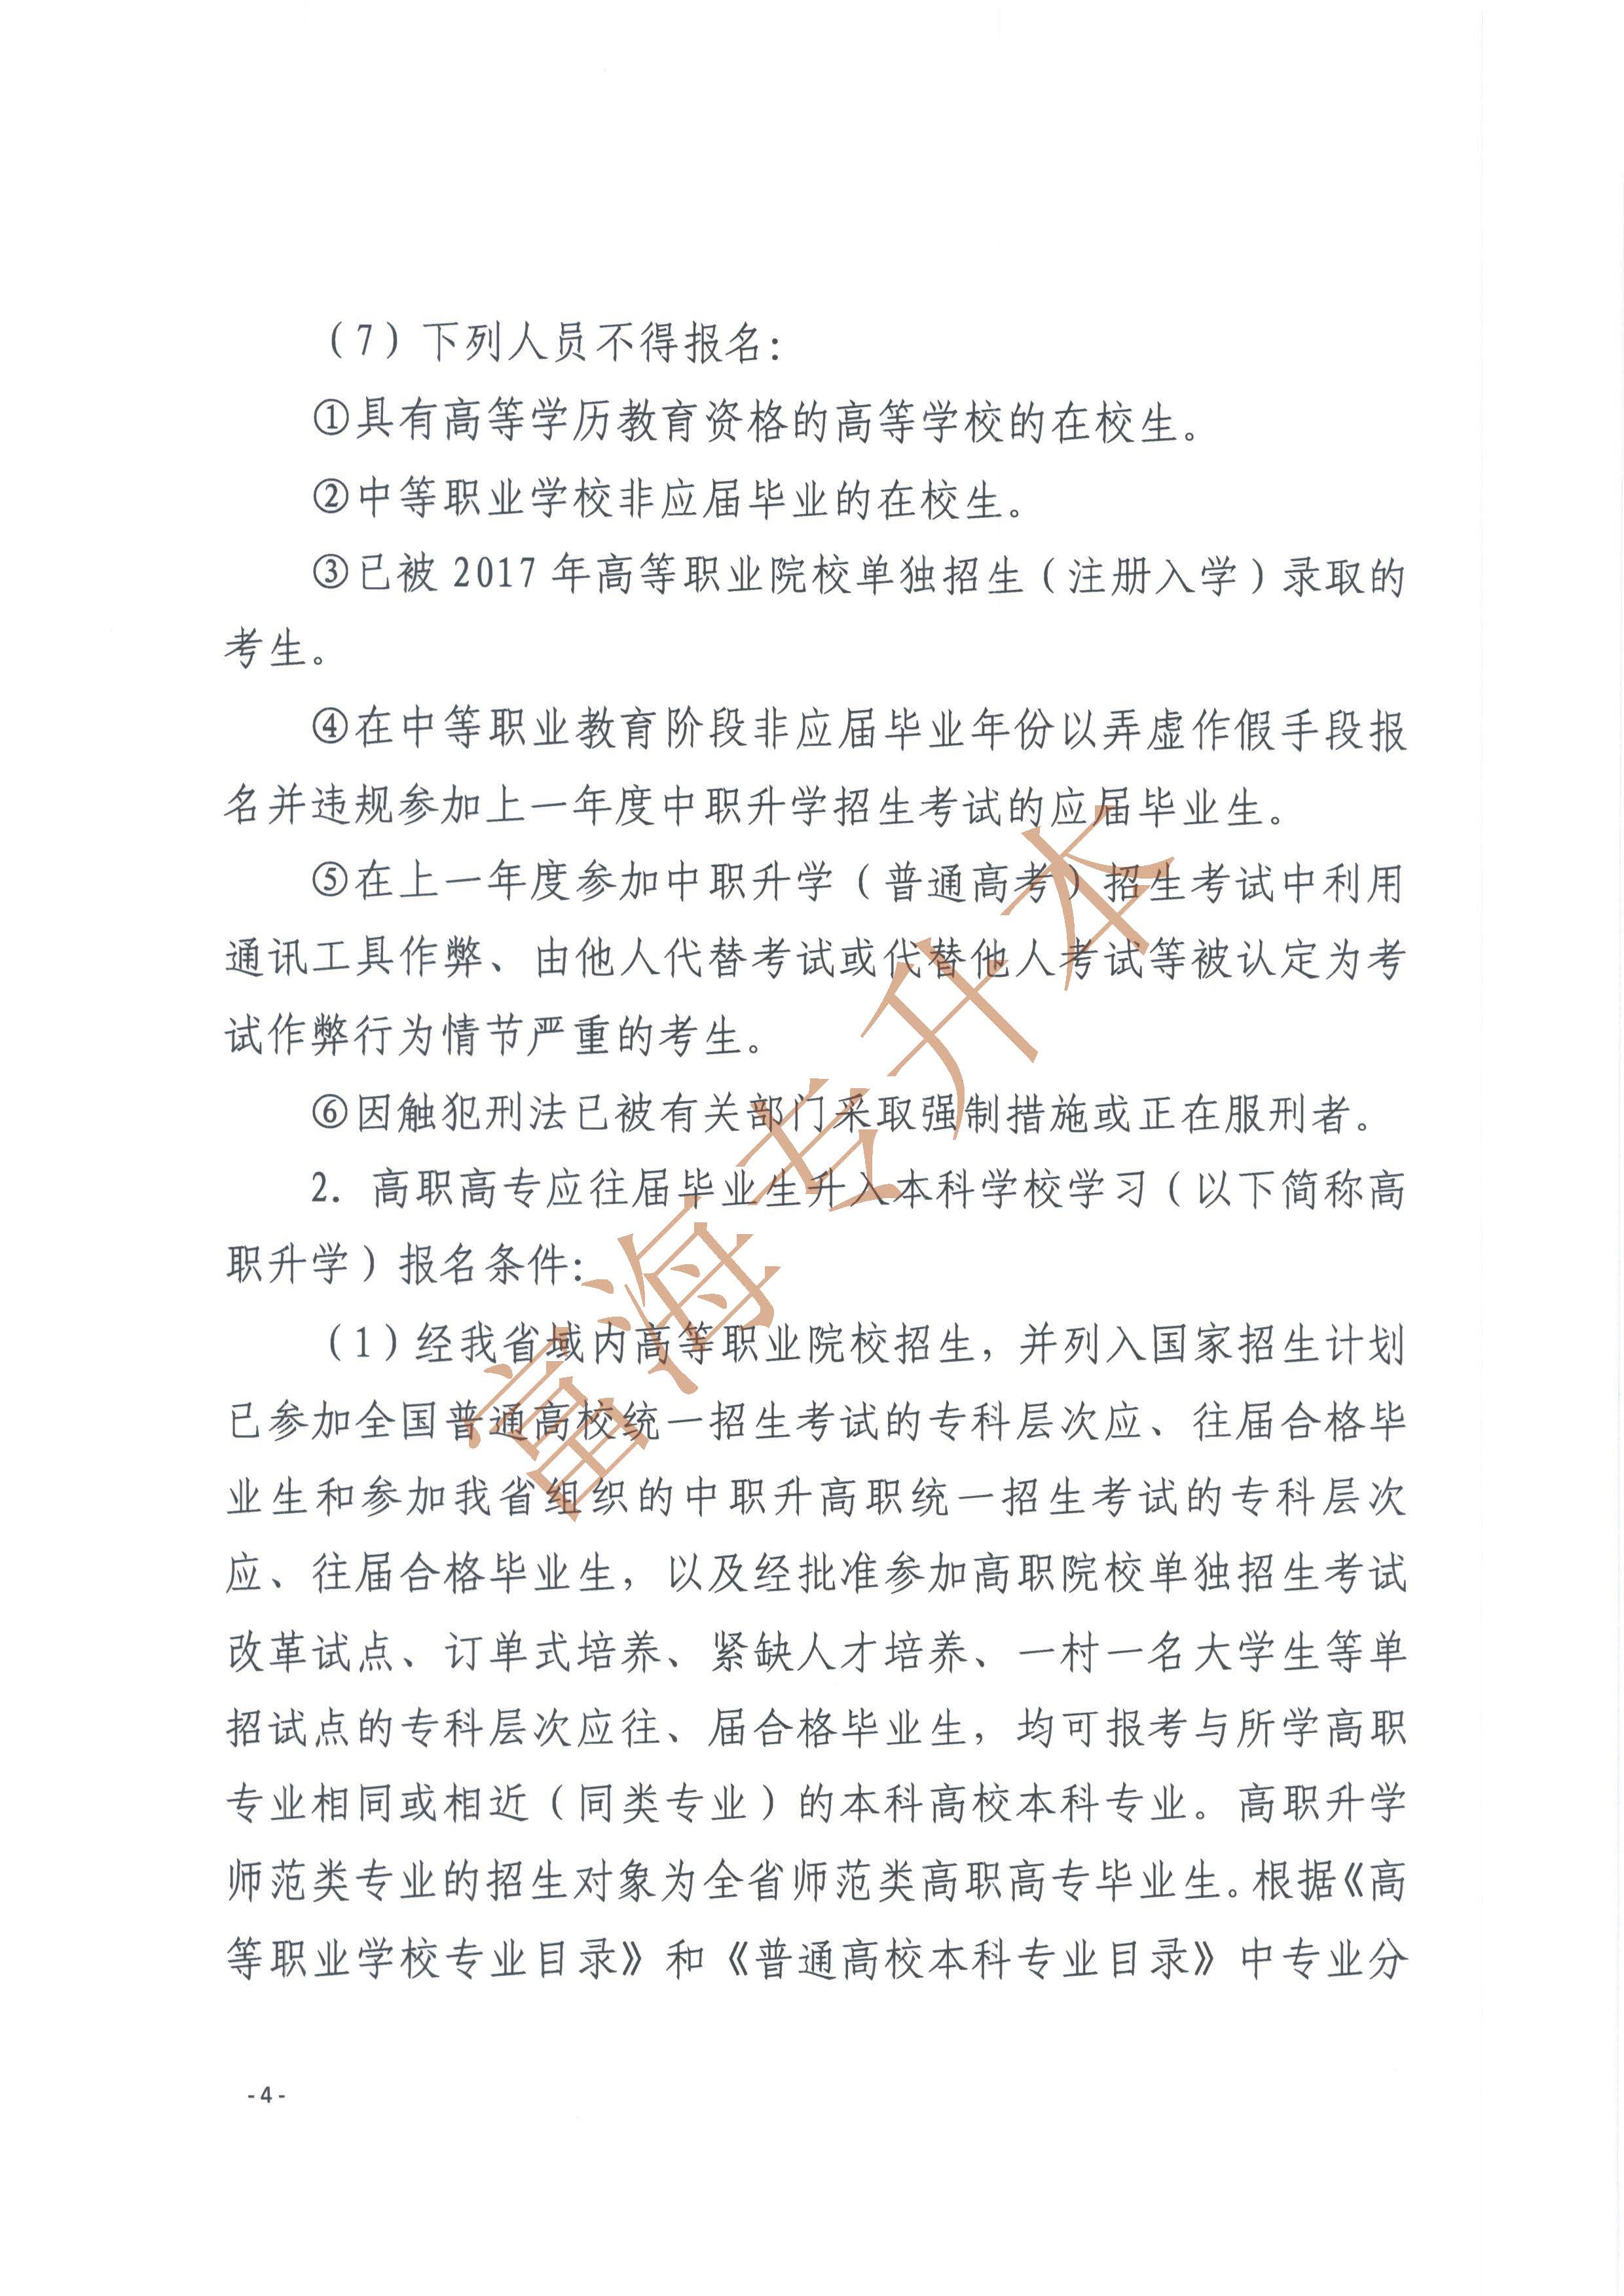 辽宁省2017年职业教育对口升学考试招生工作实施办法的通知4